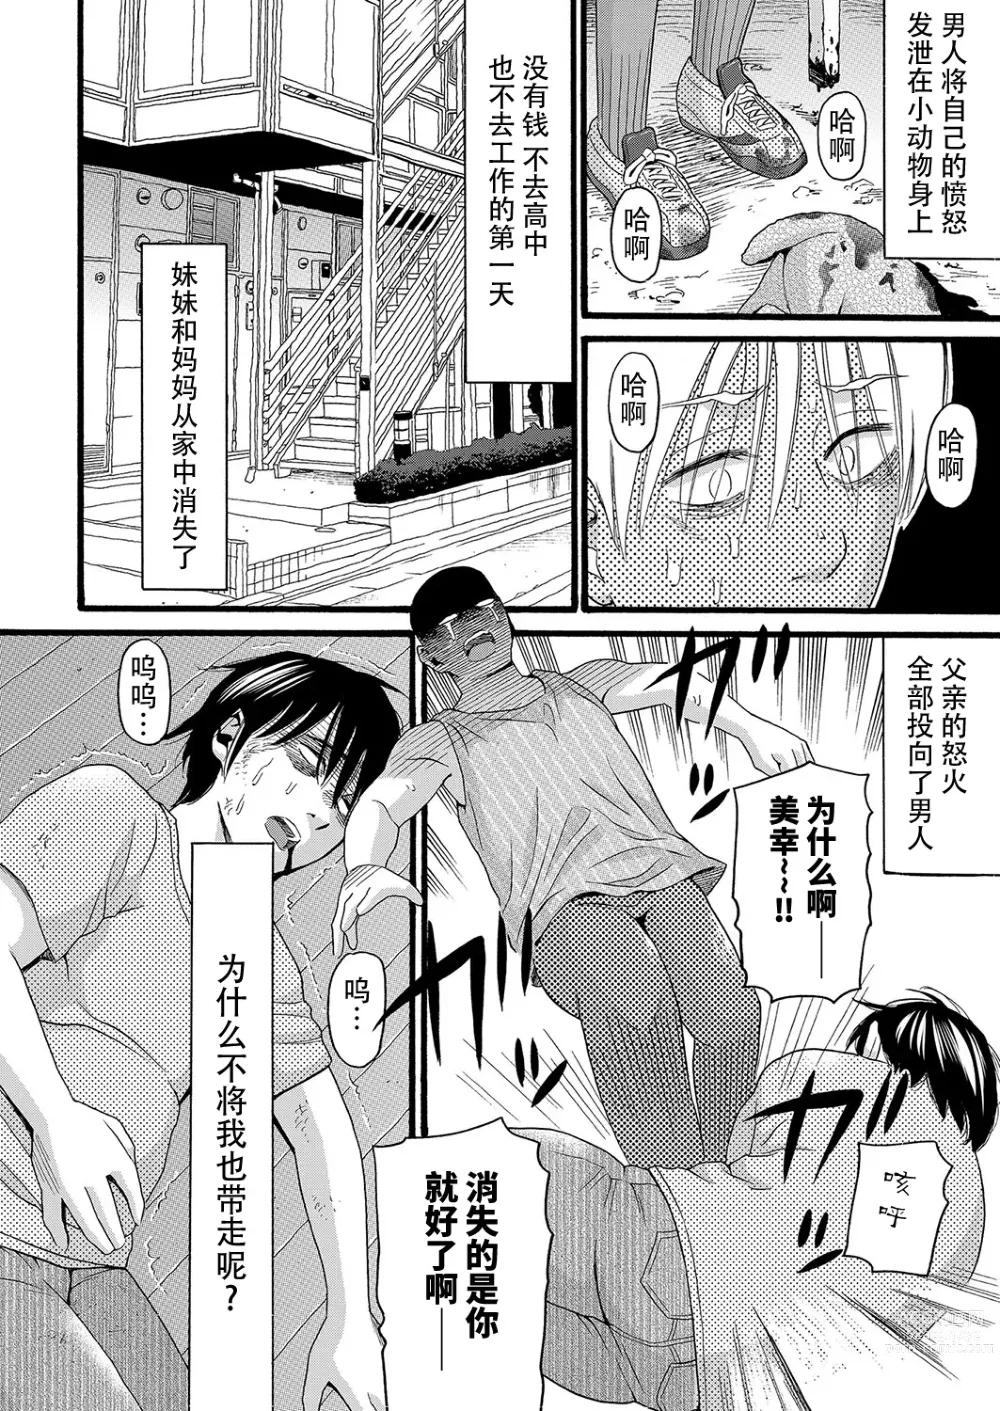 Page 7 of manga Konna Jibun ni Dare ga Shita